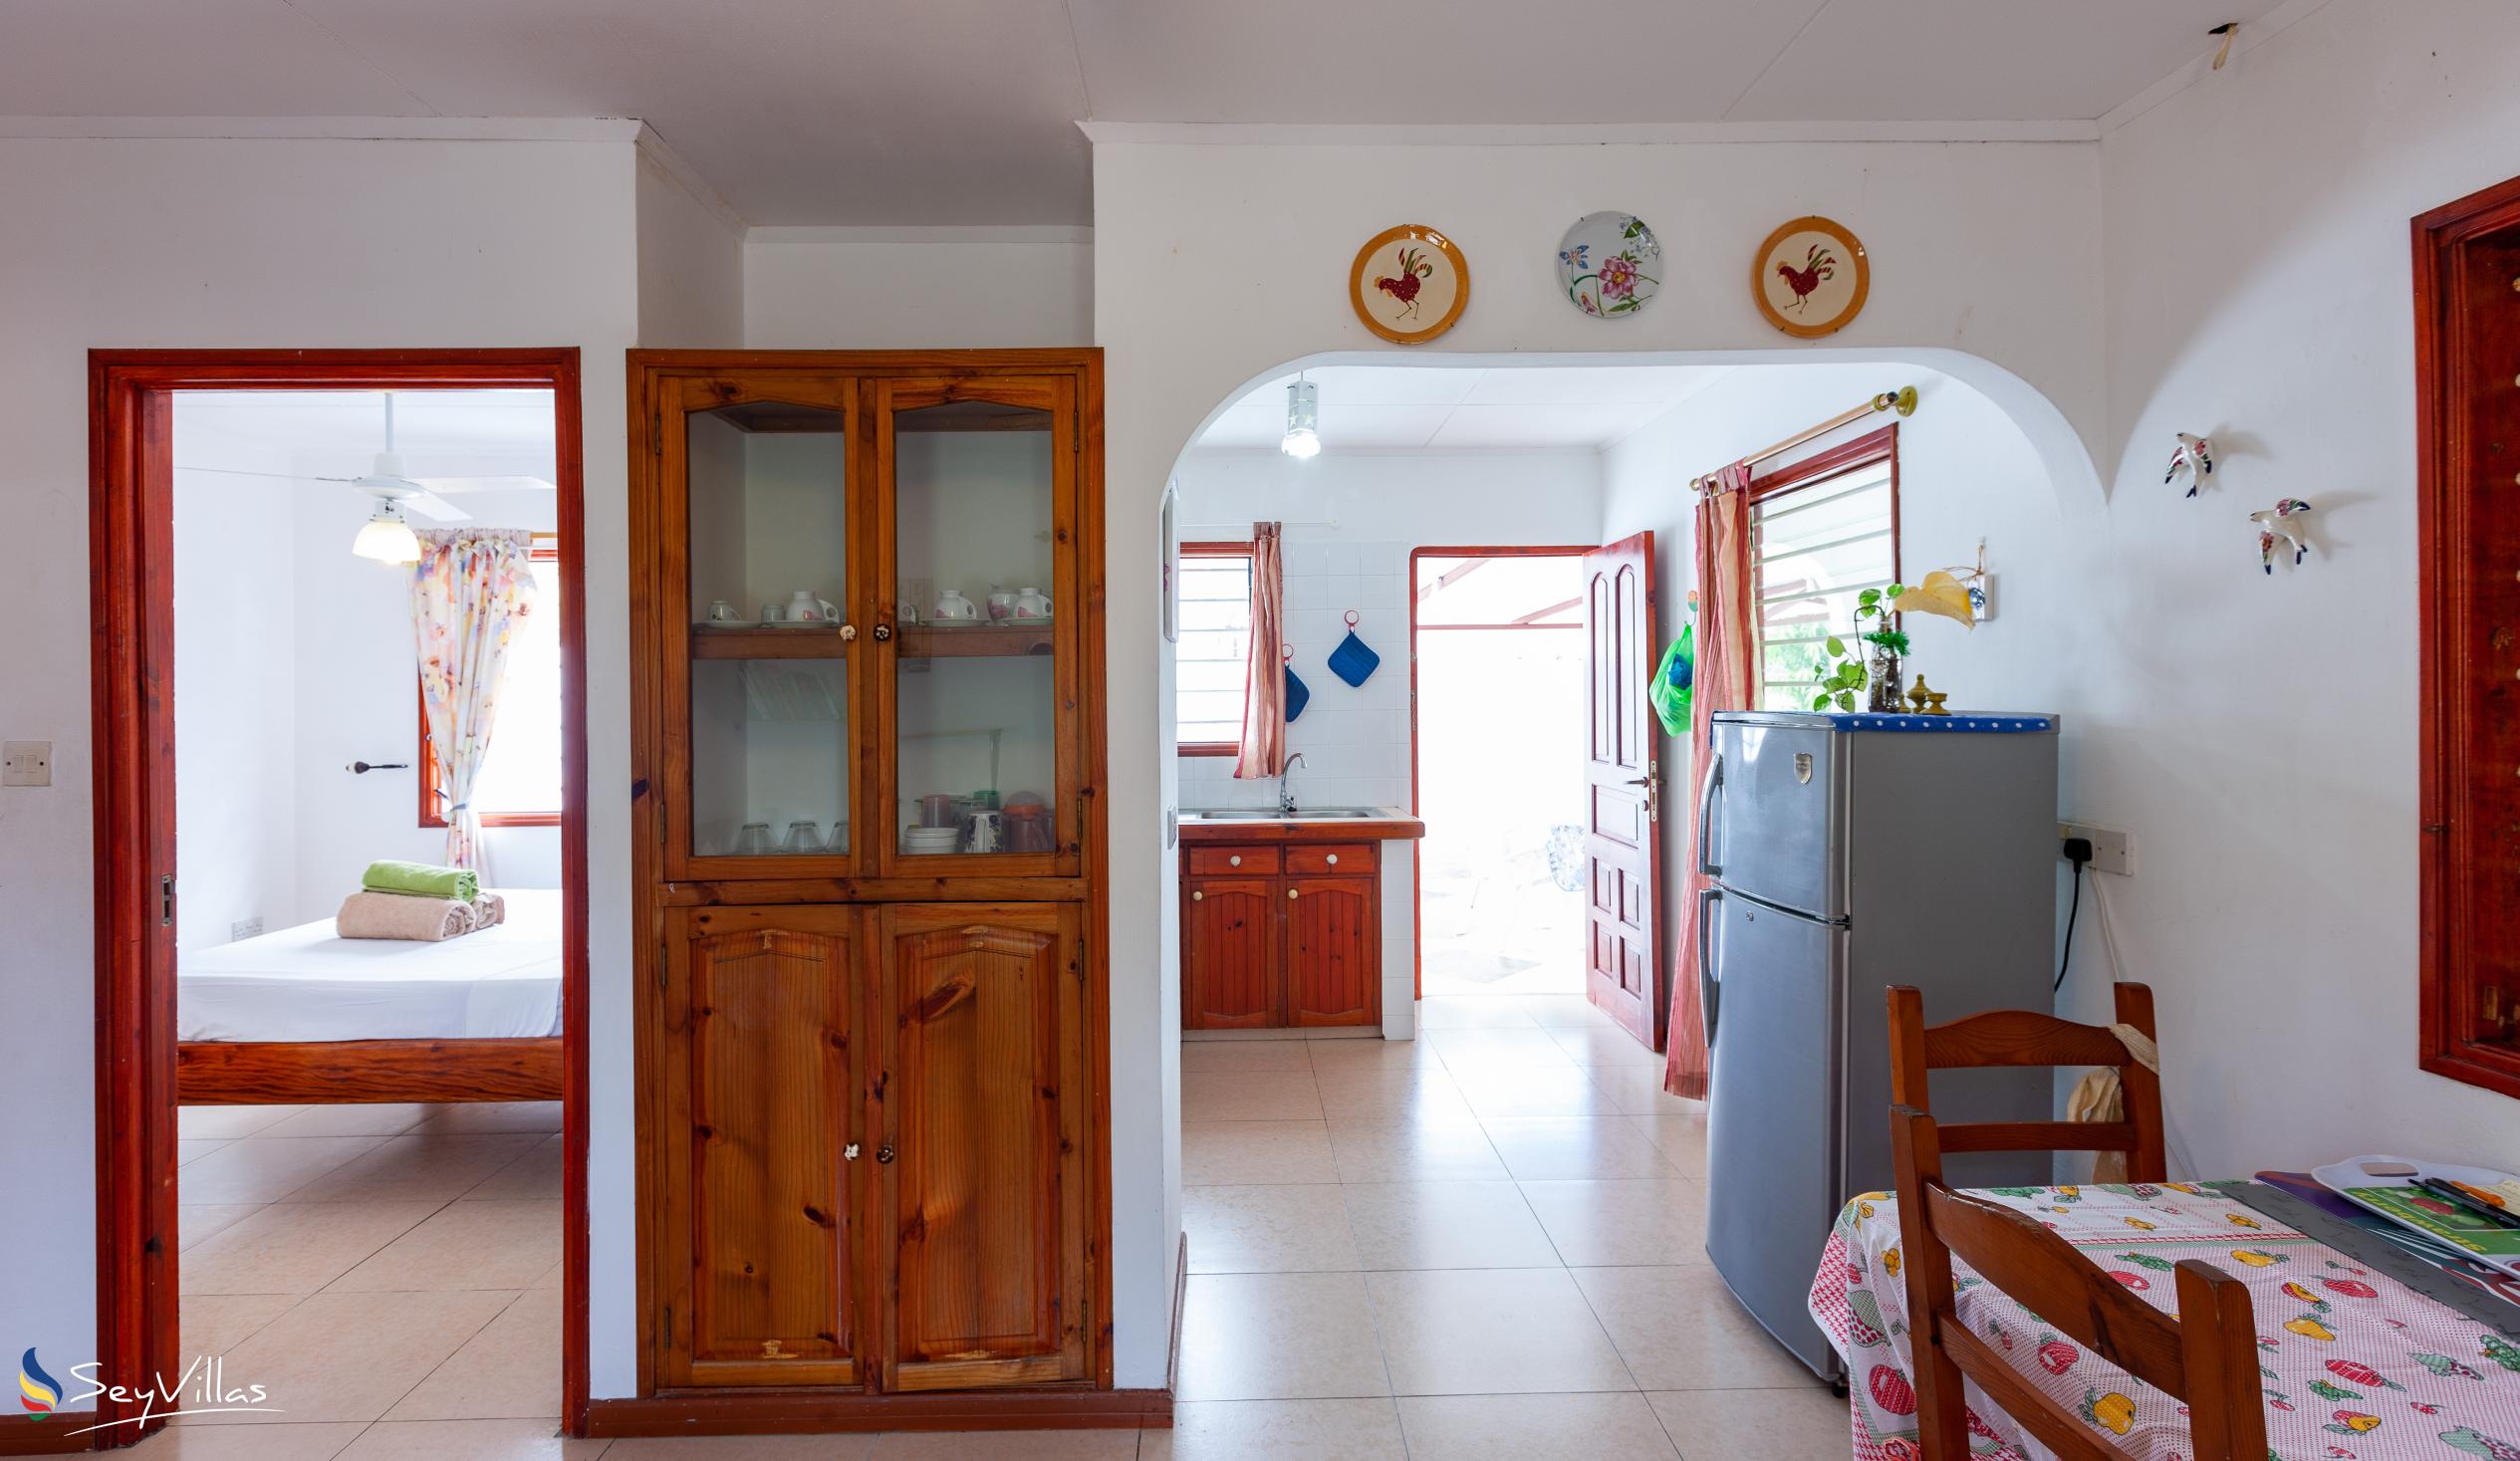 Foto 23: Baie Ste Anne Maison des Vacanze - Haus mit 1 Schlafzimmer - Praslin (Seychellen)